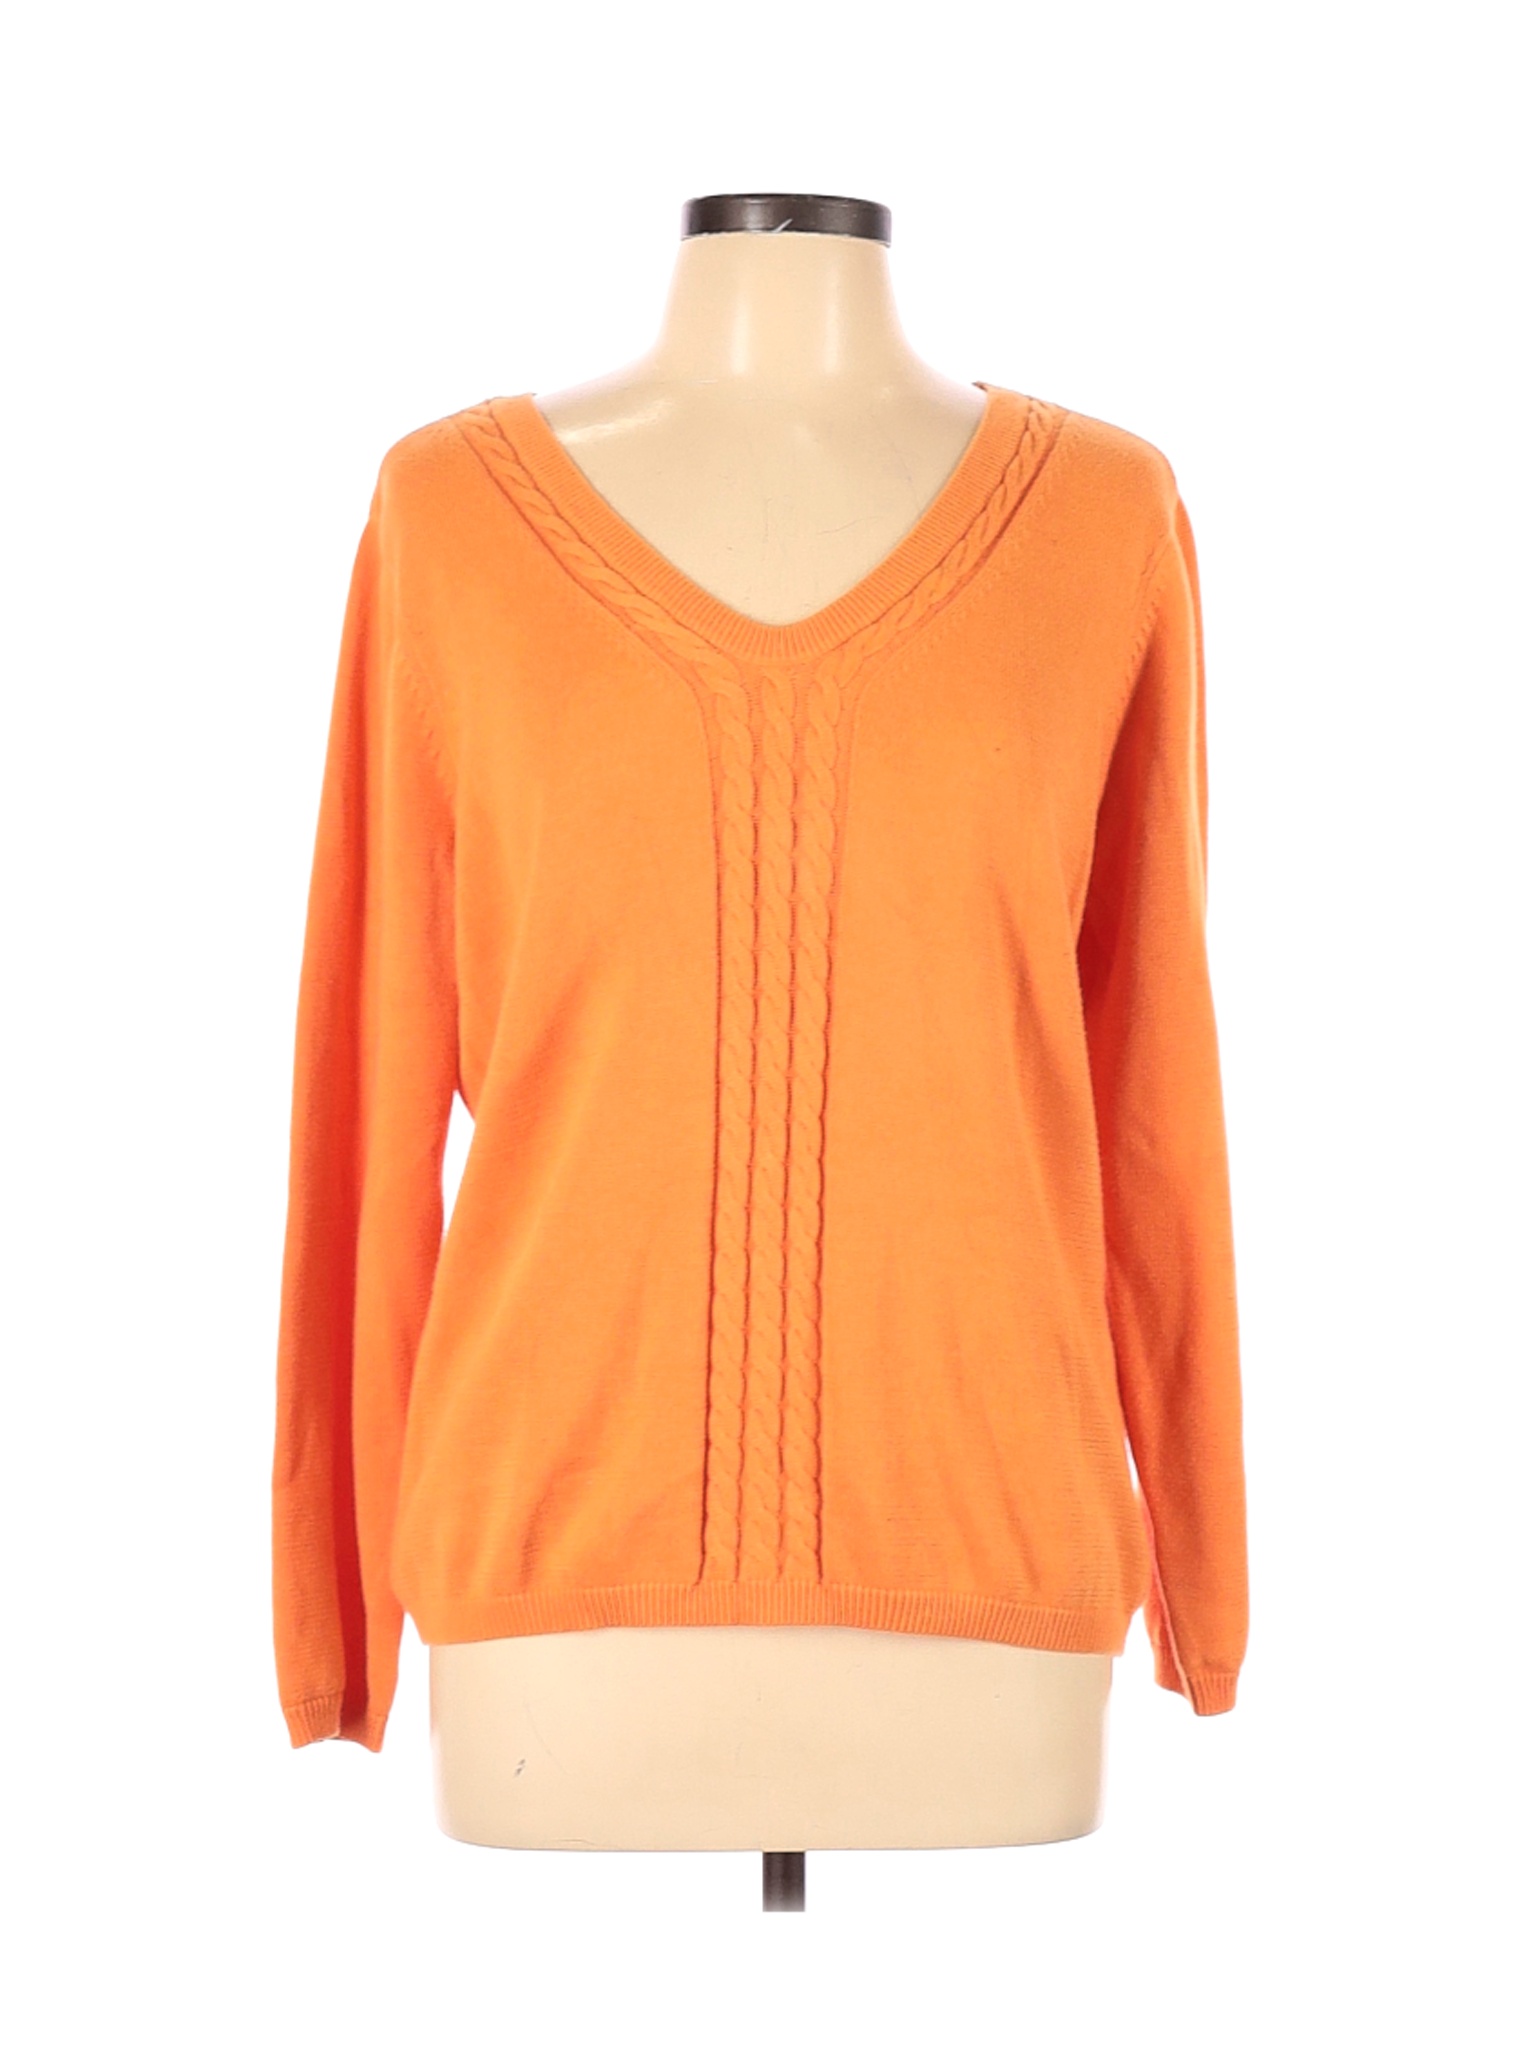 Talbots Women Orange Pullover Sweater XL | eBay